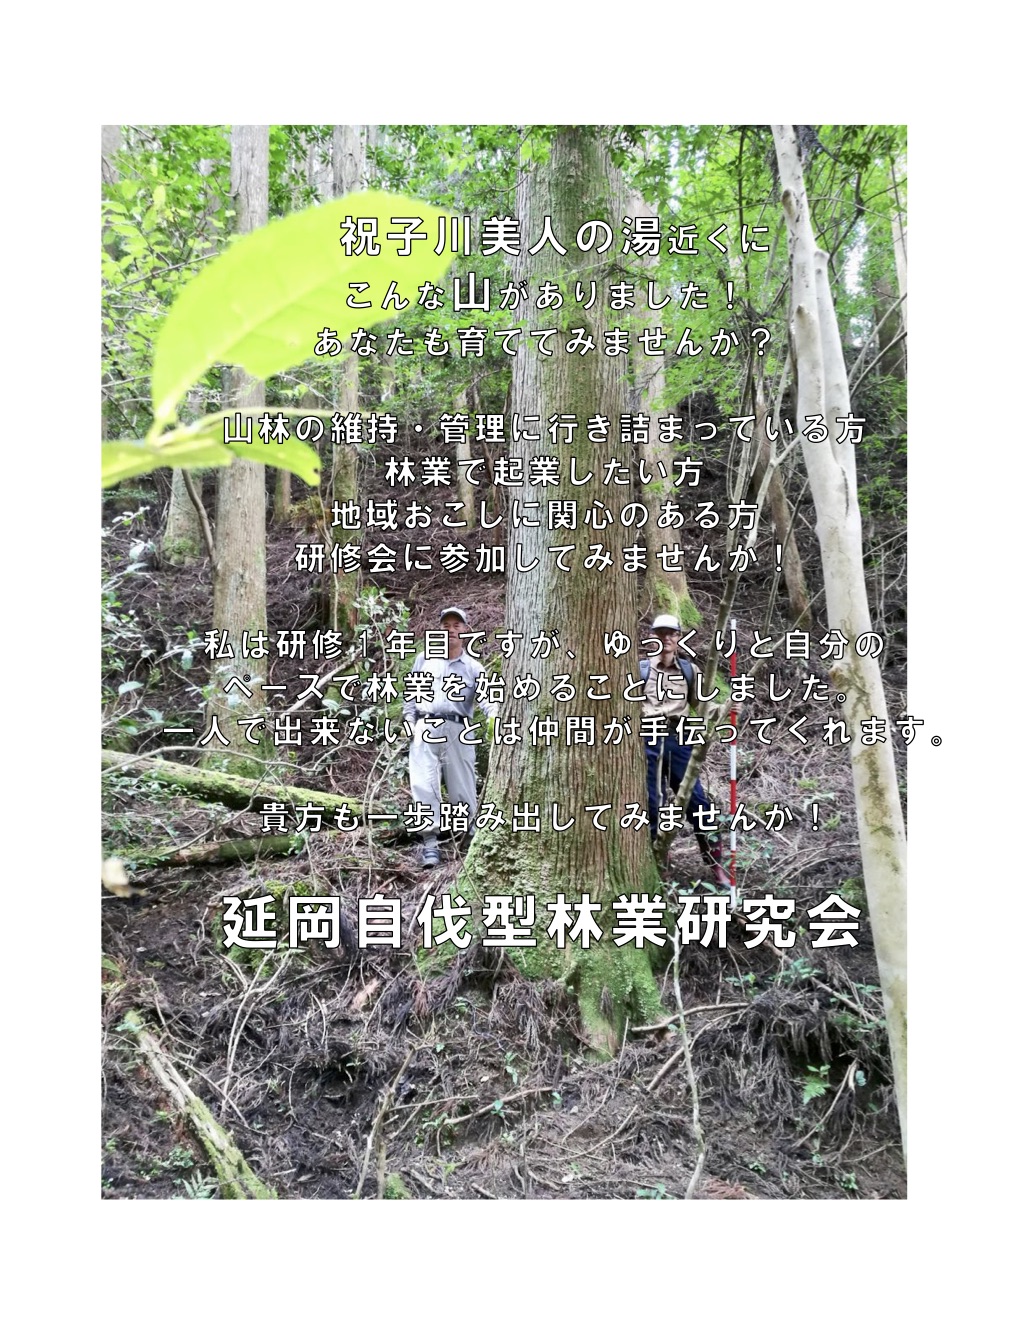 10月20日から「延岡自伐型林業研究会」の2018年研修が開催されます。